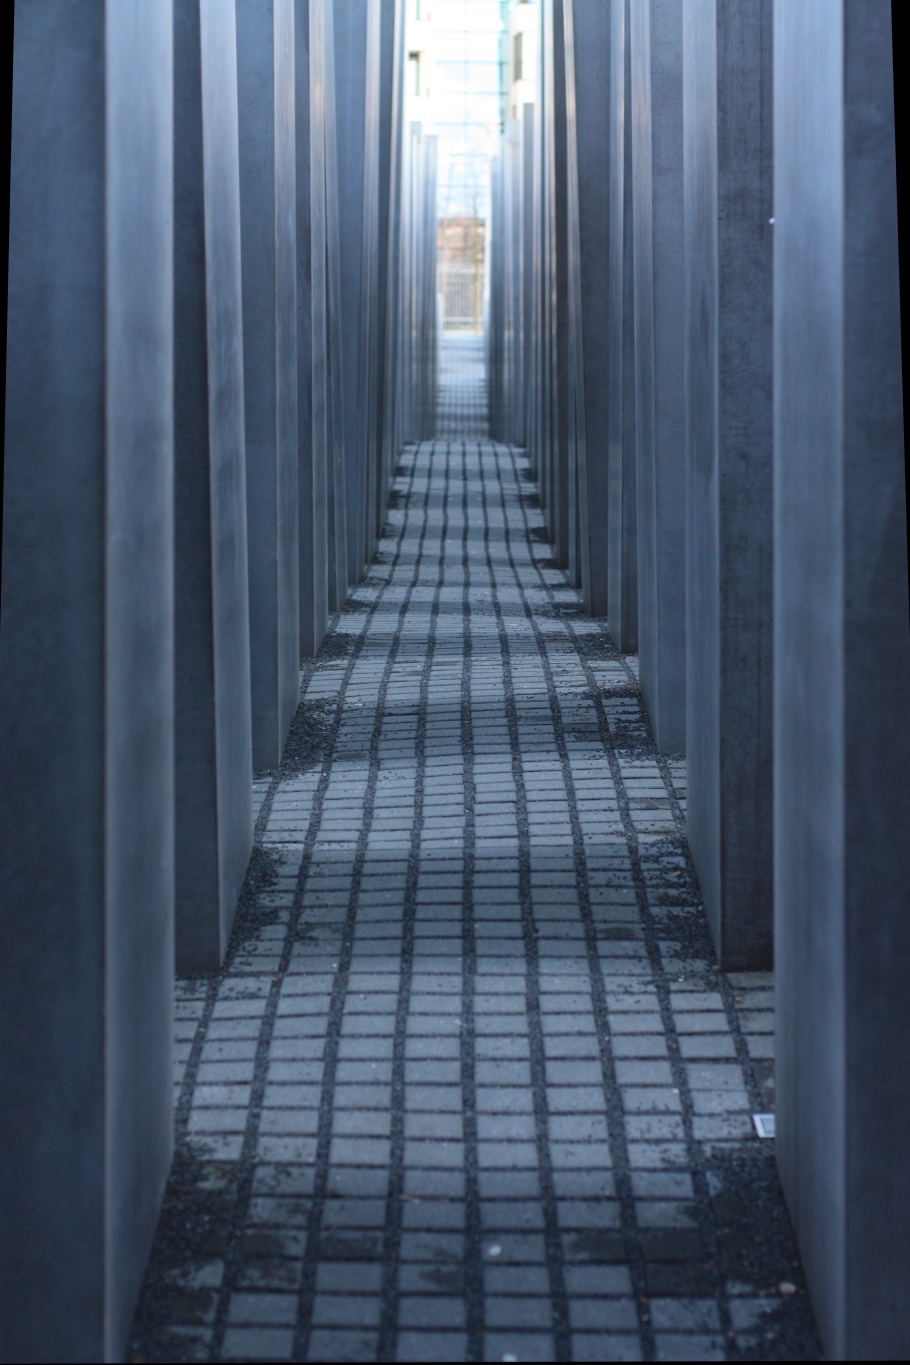 Field of stelae, Holocaust Memorial, Berlin, Germany, fotoeins.com